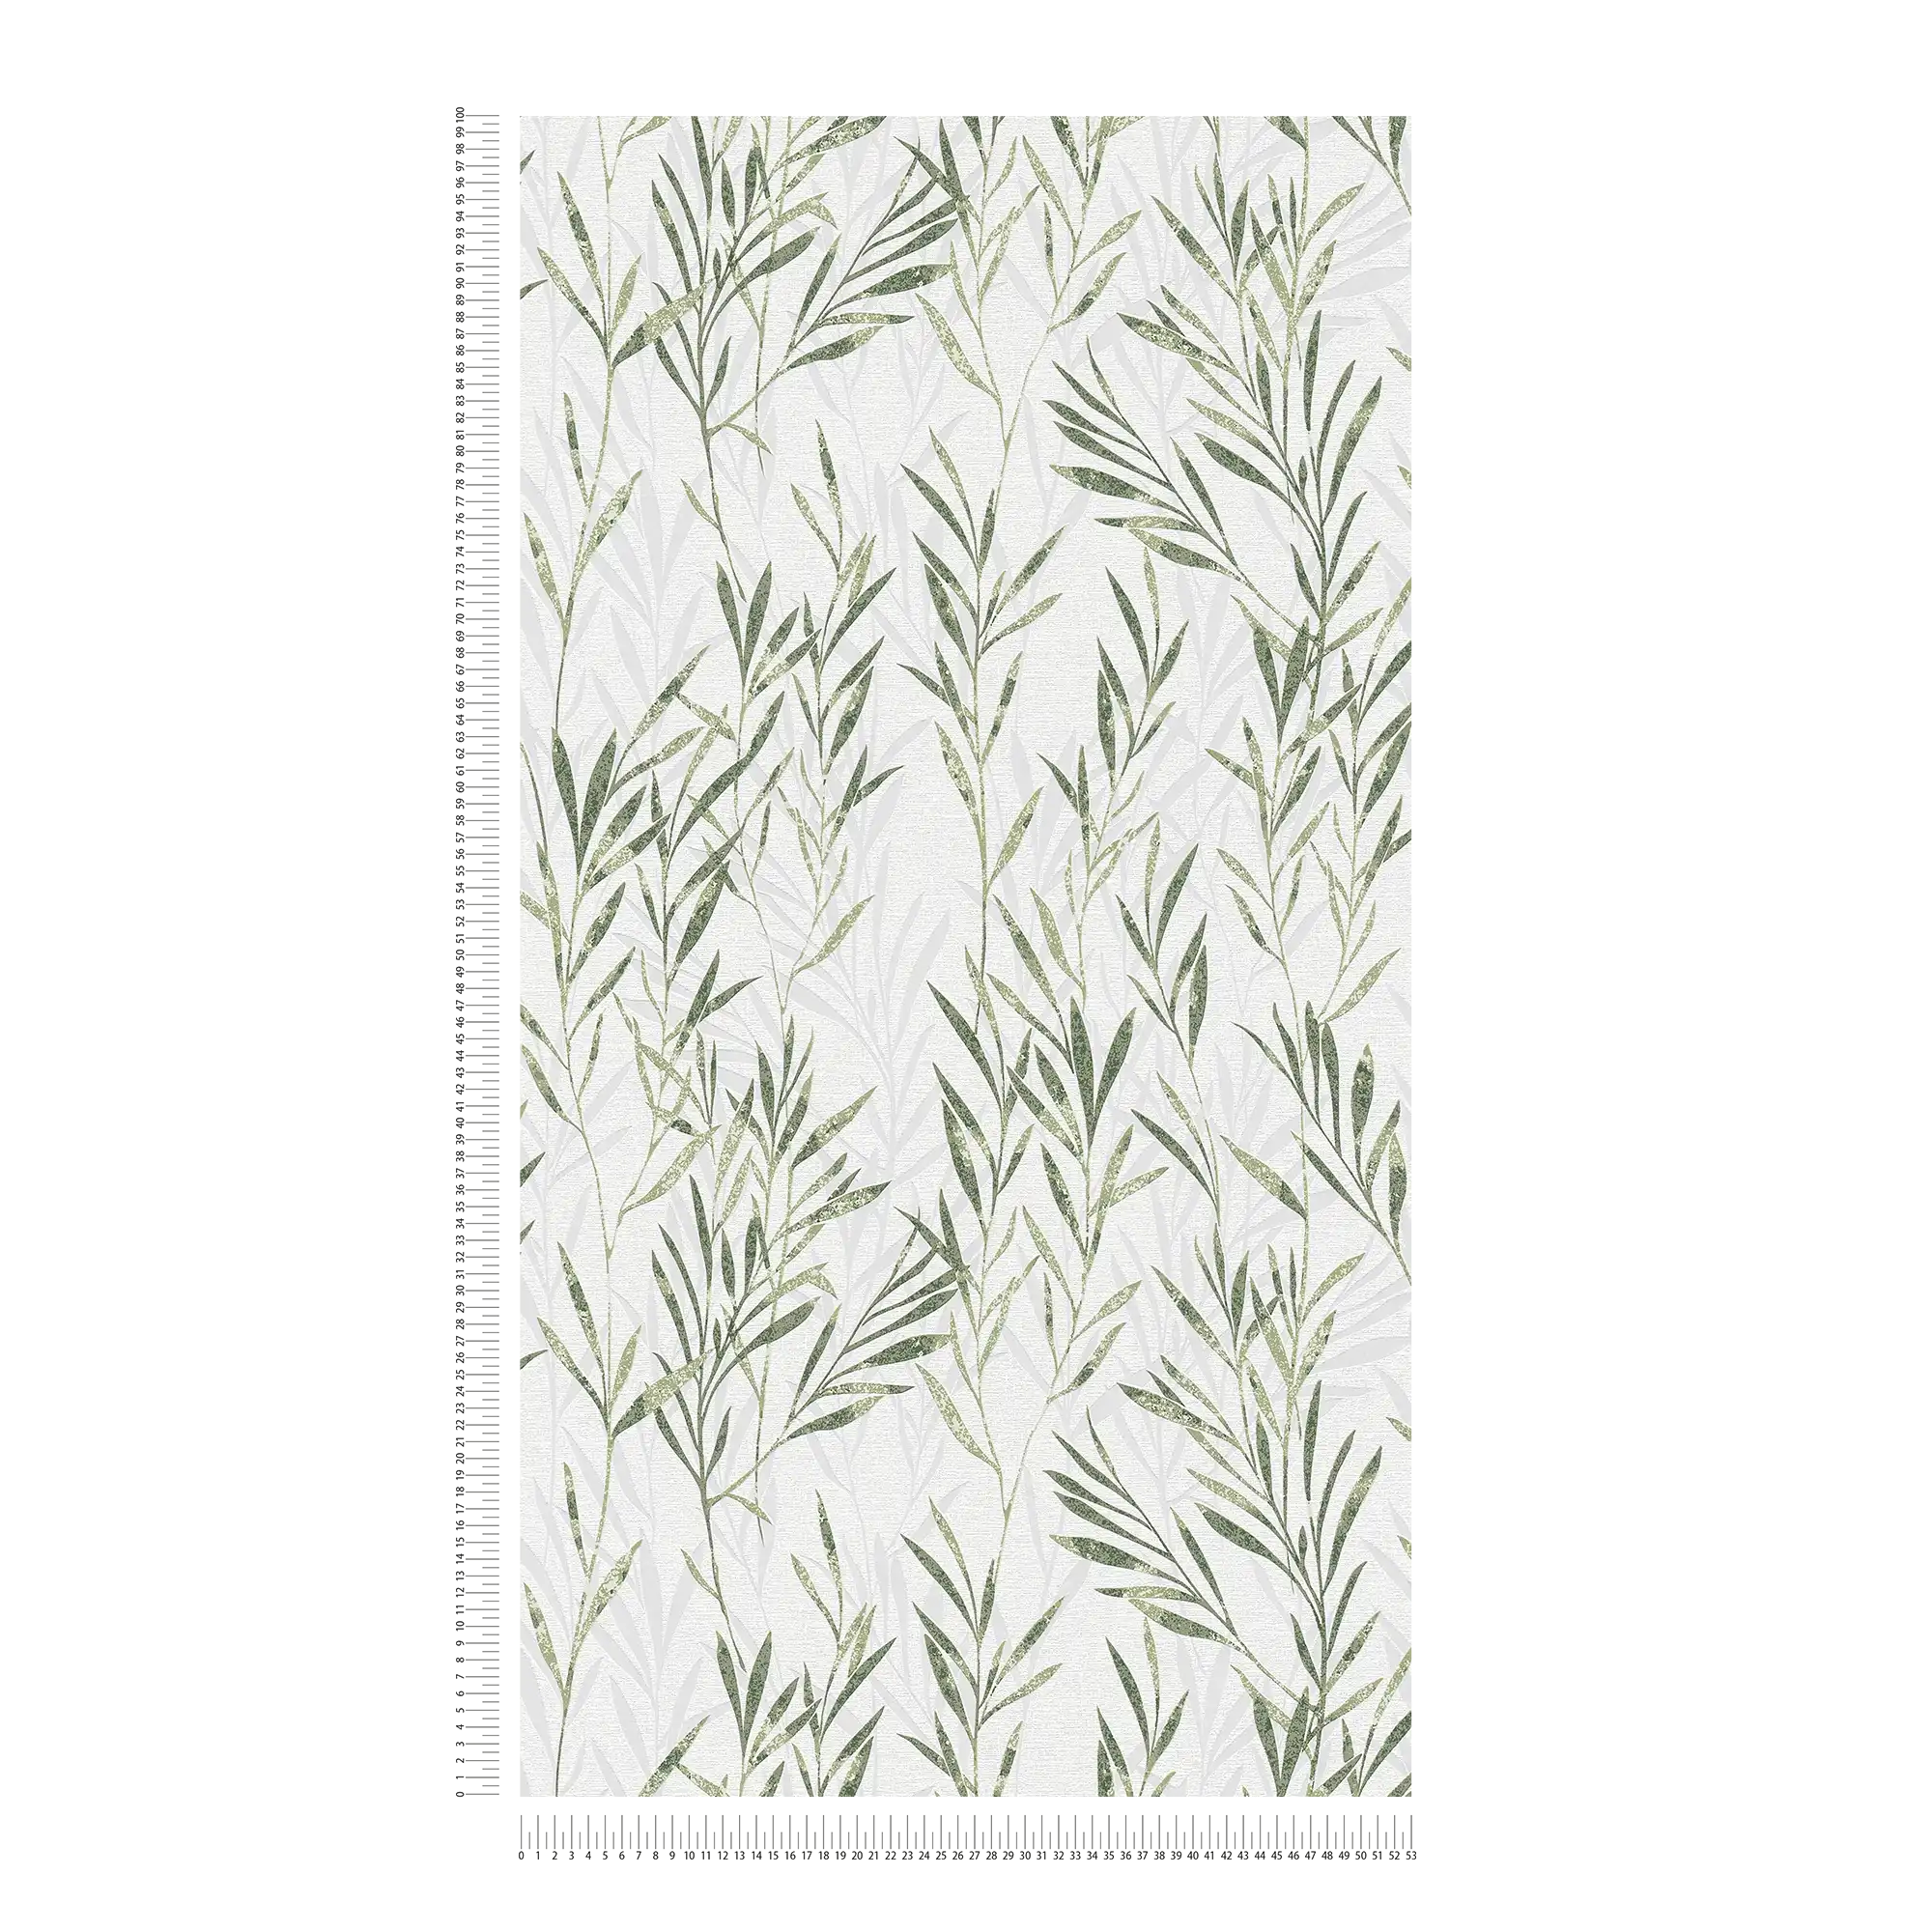             Papel pintado no tejido con diseño de hojas y zarcillos - verde, blanco
        